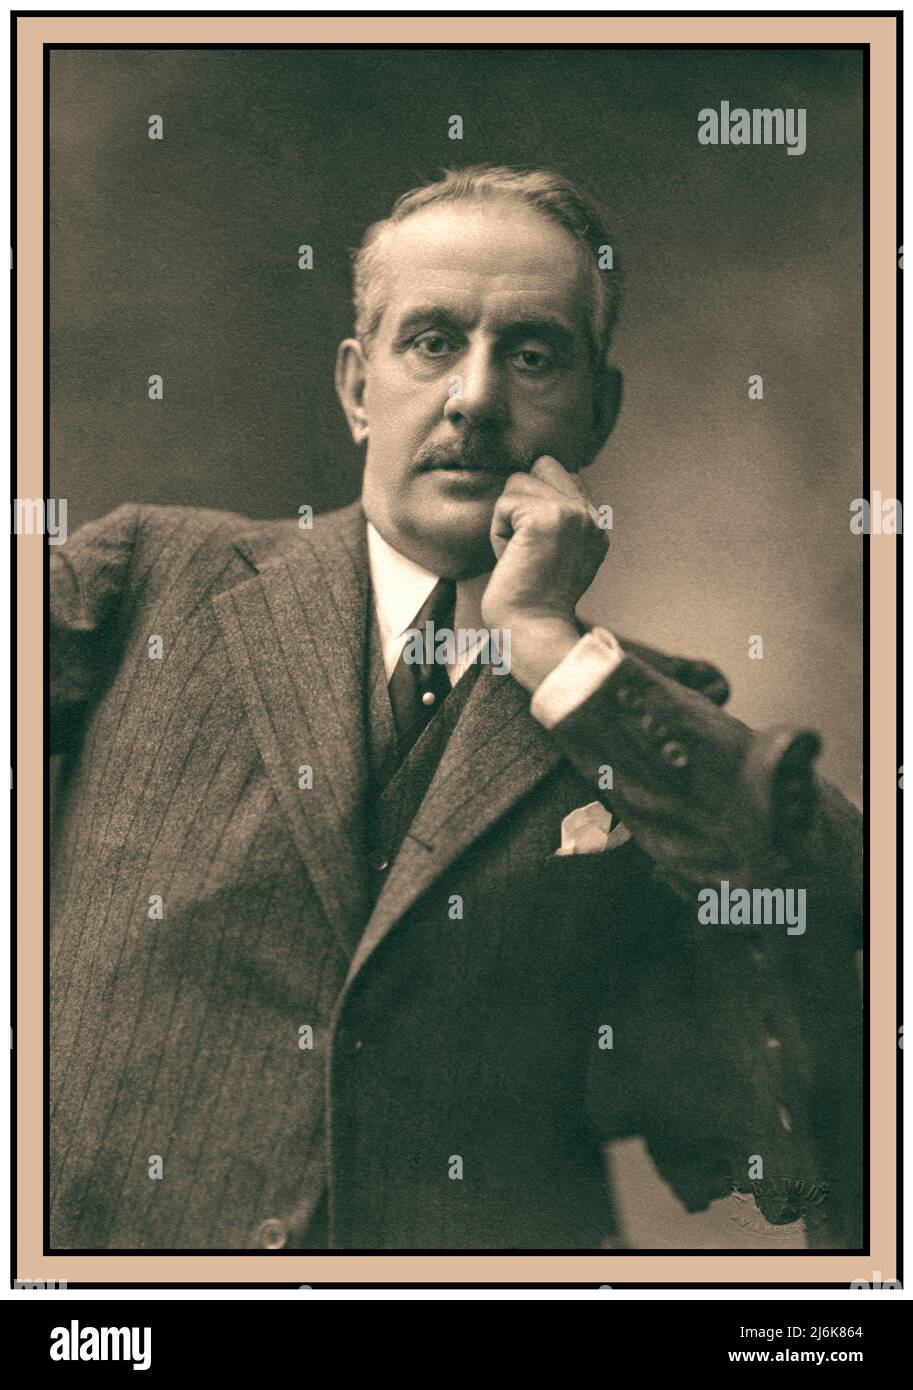 PUCCINI Portrait rétro de Giacomo Puccini, compositeur (1858-1924). Photo par Attilio Badodi, Milan, 1924. Banque D'Images